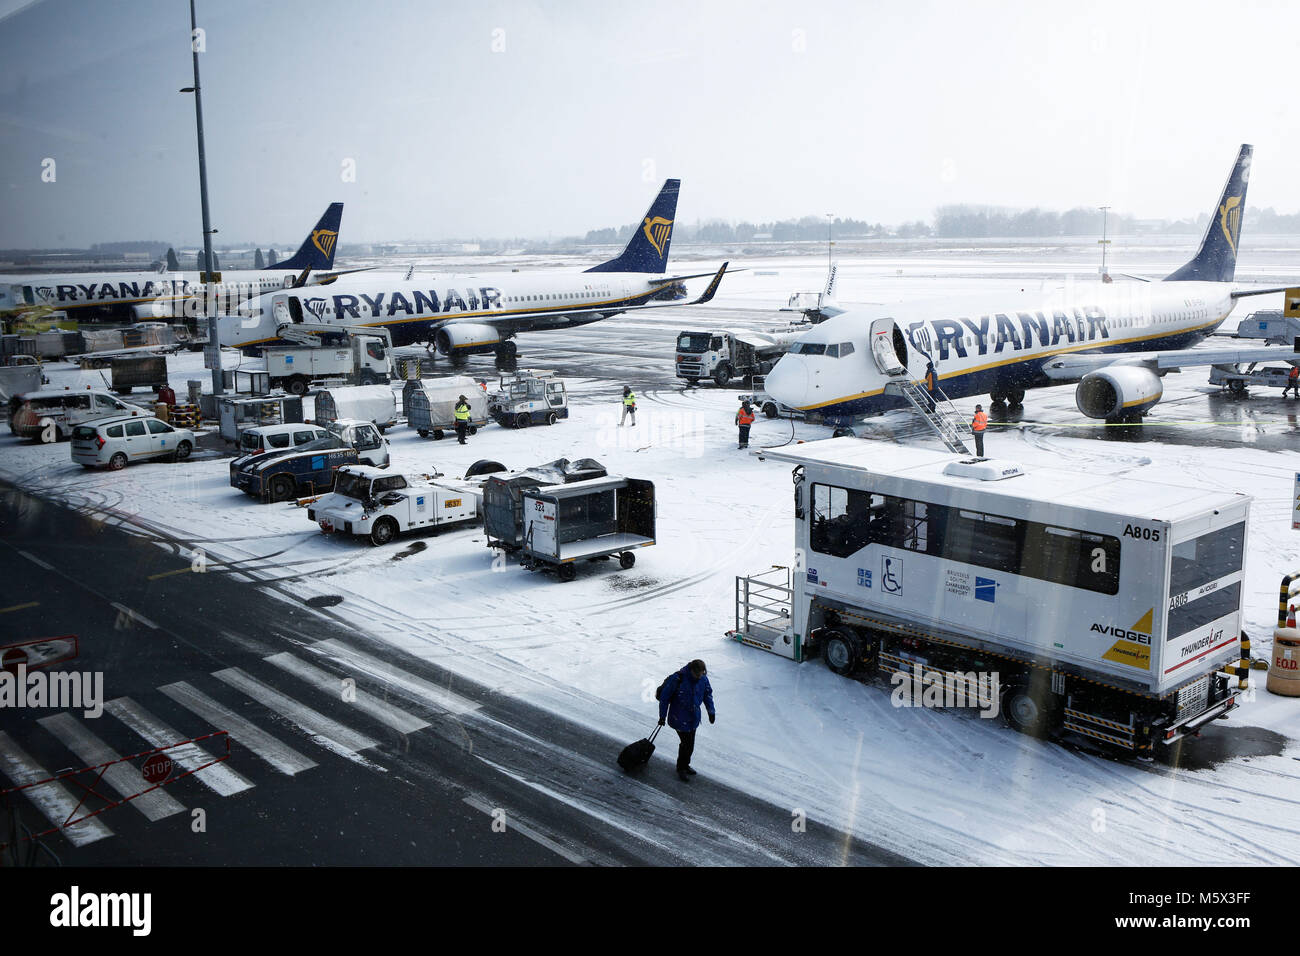 Charleroi, Belgique. 26 février 2018. Les avions sur la piste sont couverts par la neige durant une chute de neige à l'aéroport de Charleroi Bruxelles Sud. Alexandros Michailidis/Alamy Live News Banque D'Images